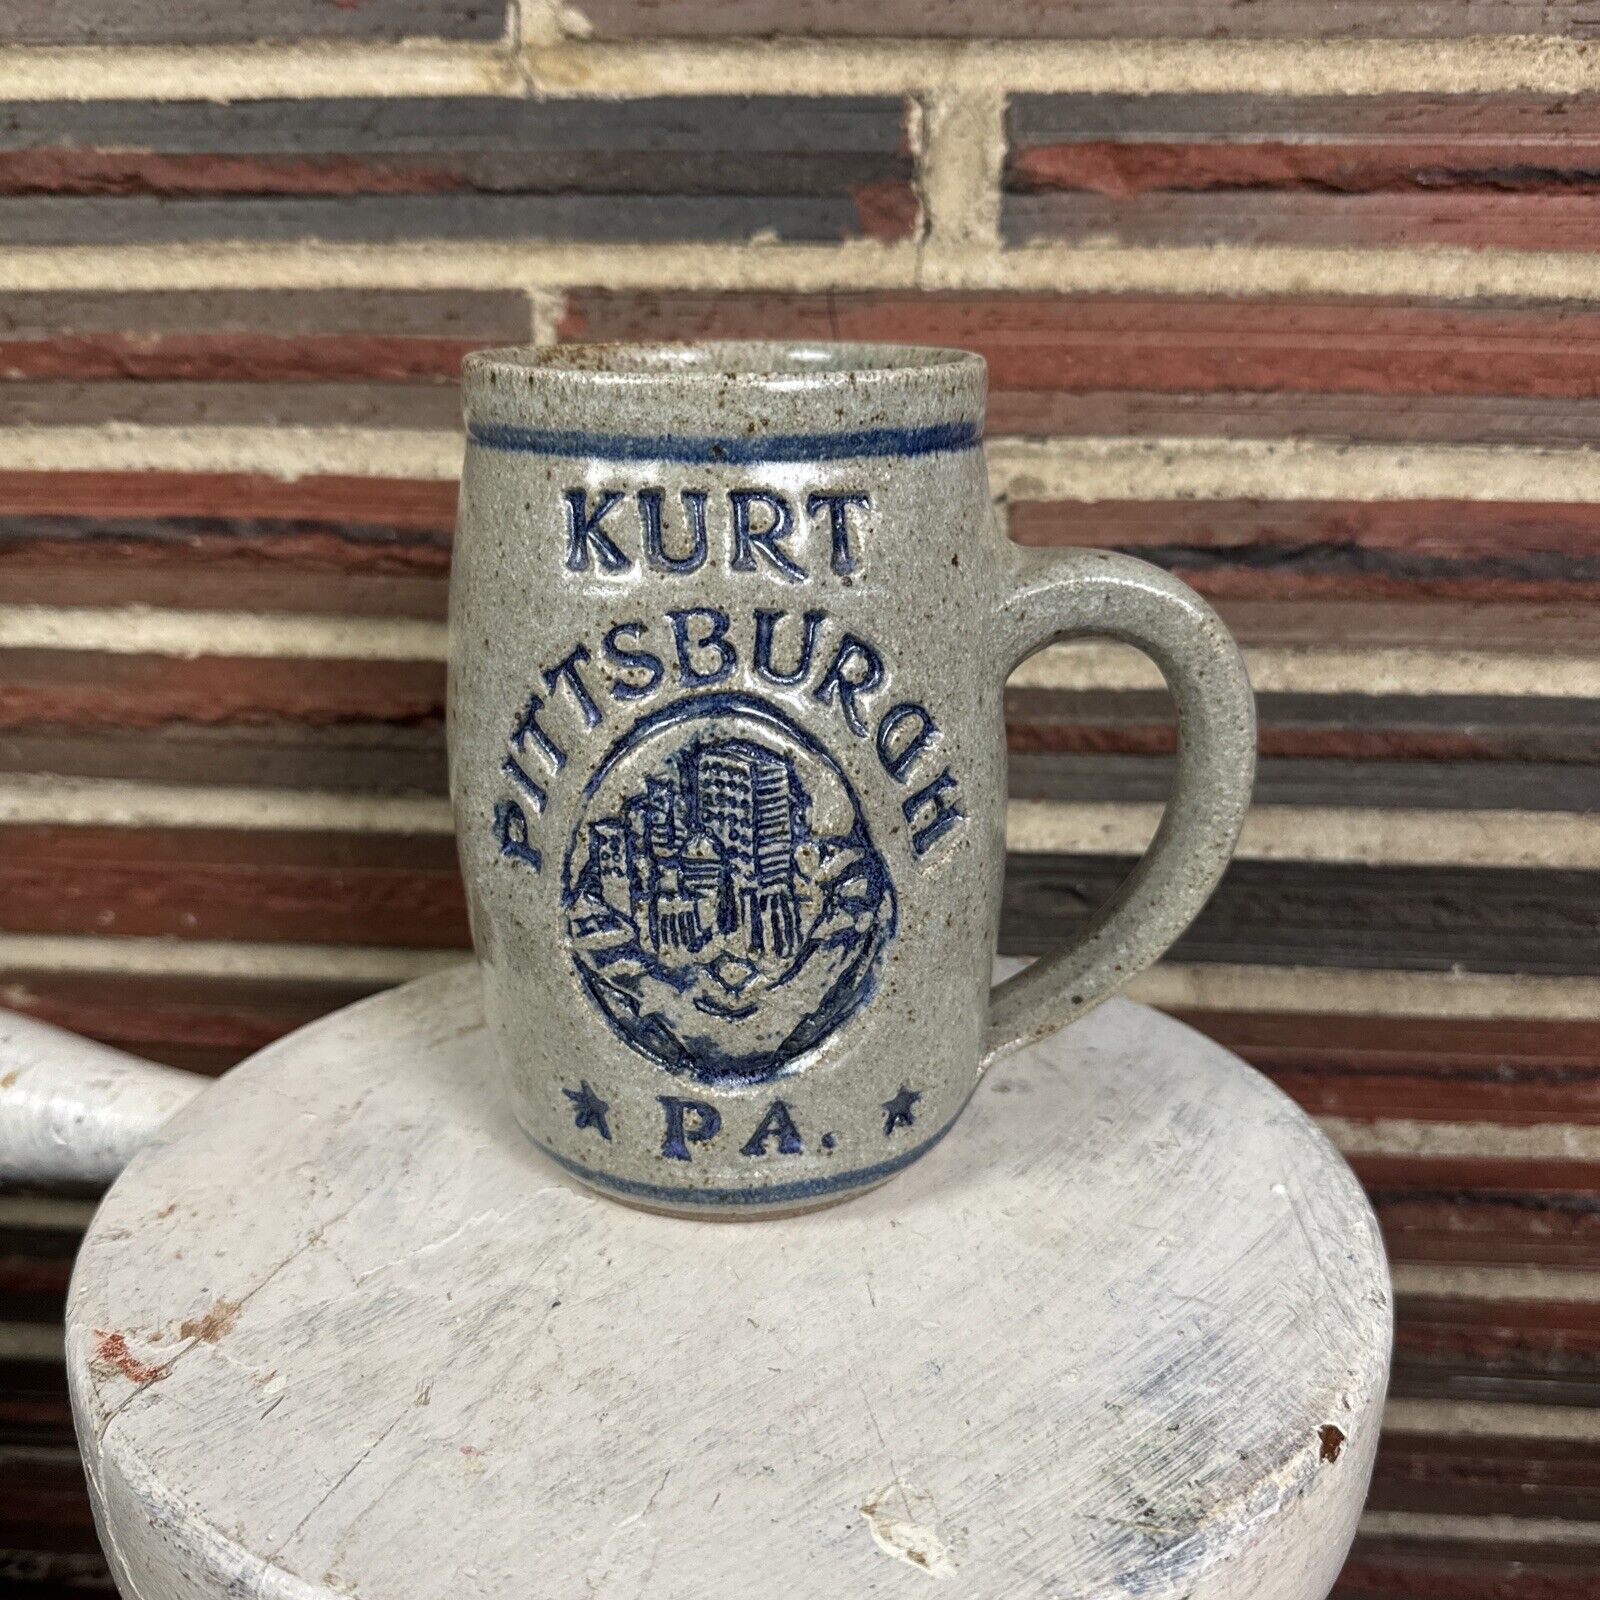 Vintage Kurt Pittsburgh PA Stein Beer Mug Gray Blue with Handle Drinkware Heavy